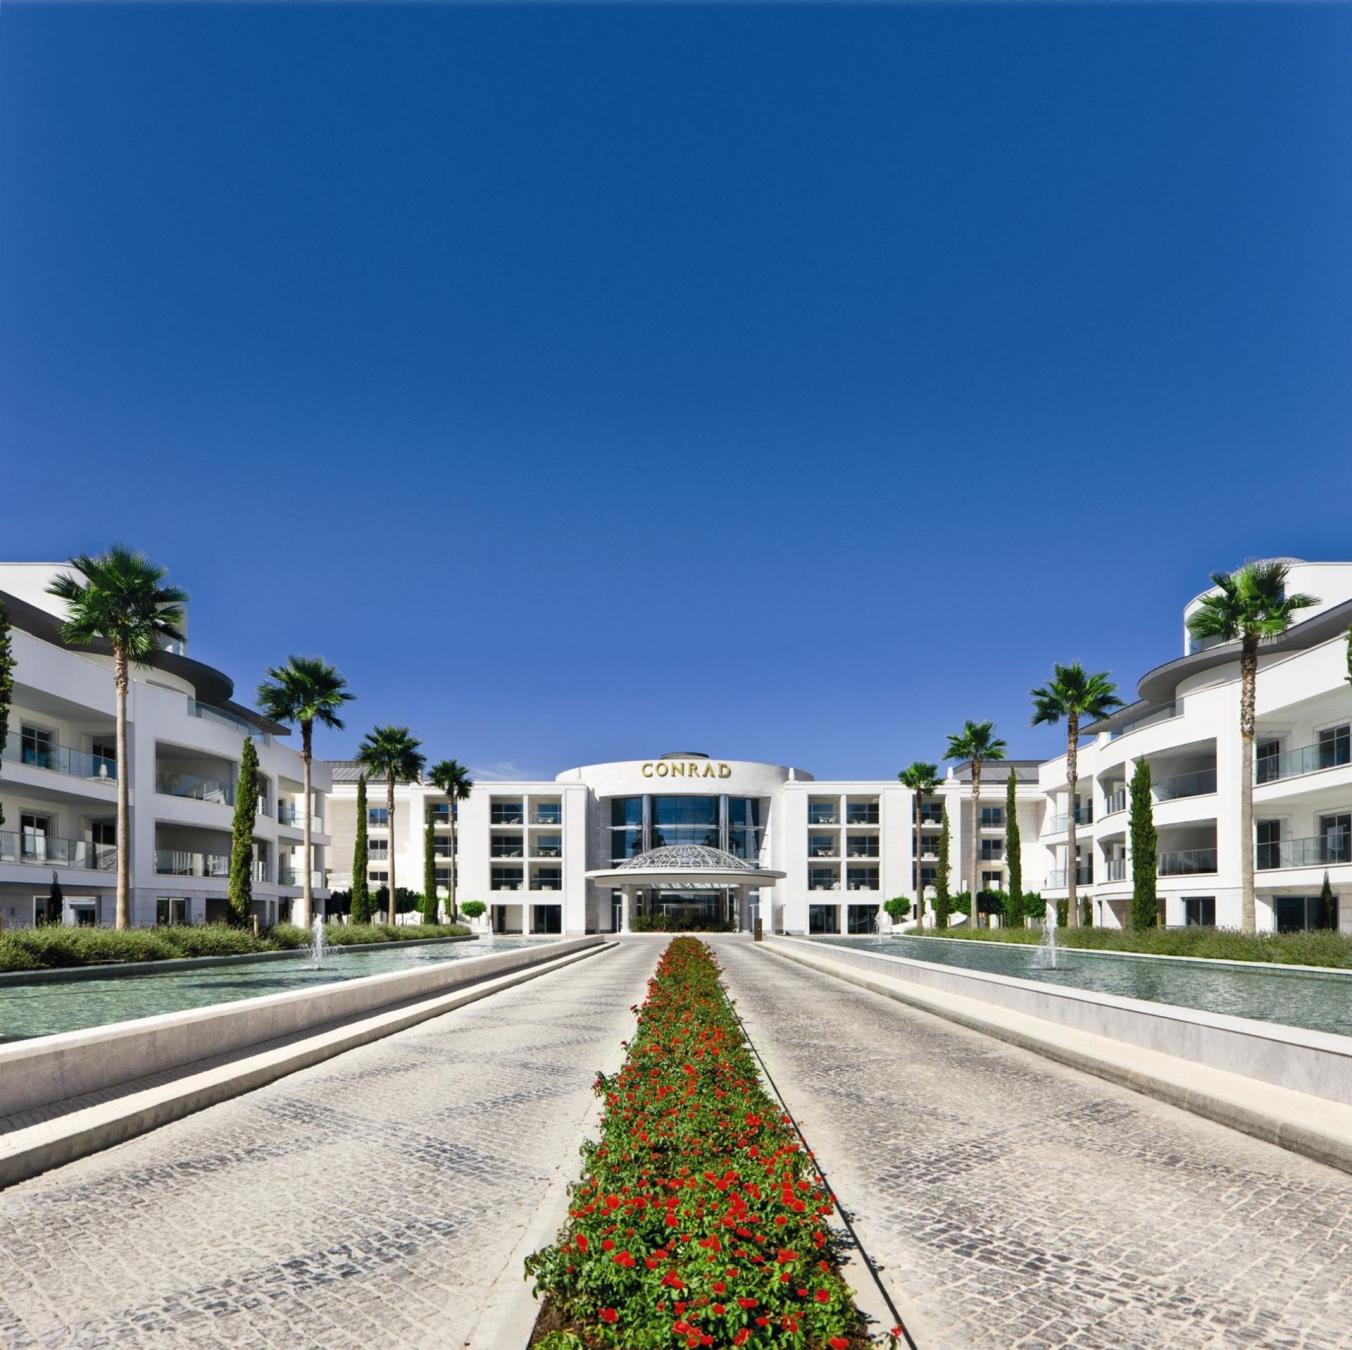 Conrad Algarve luxe hotel deals